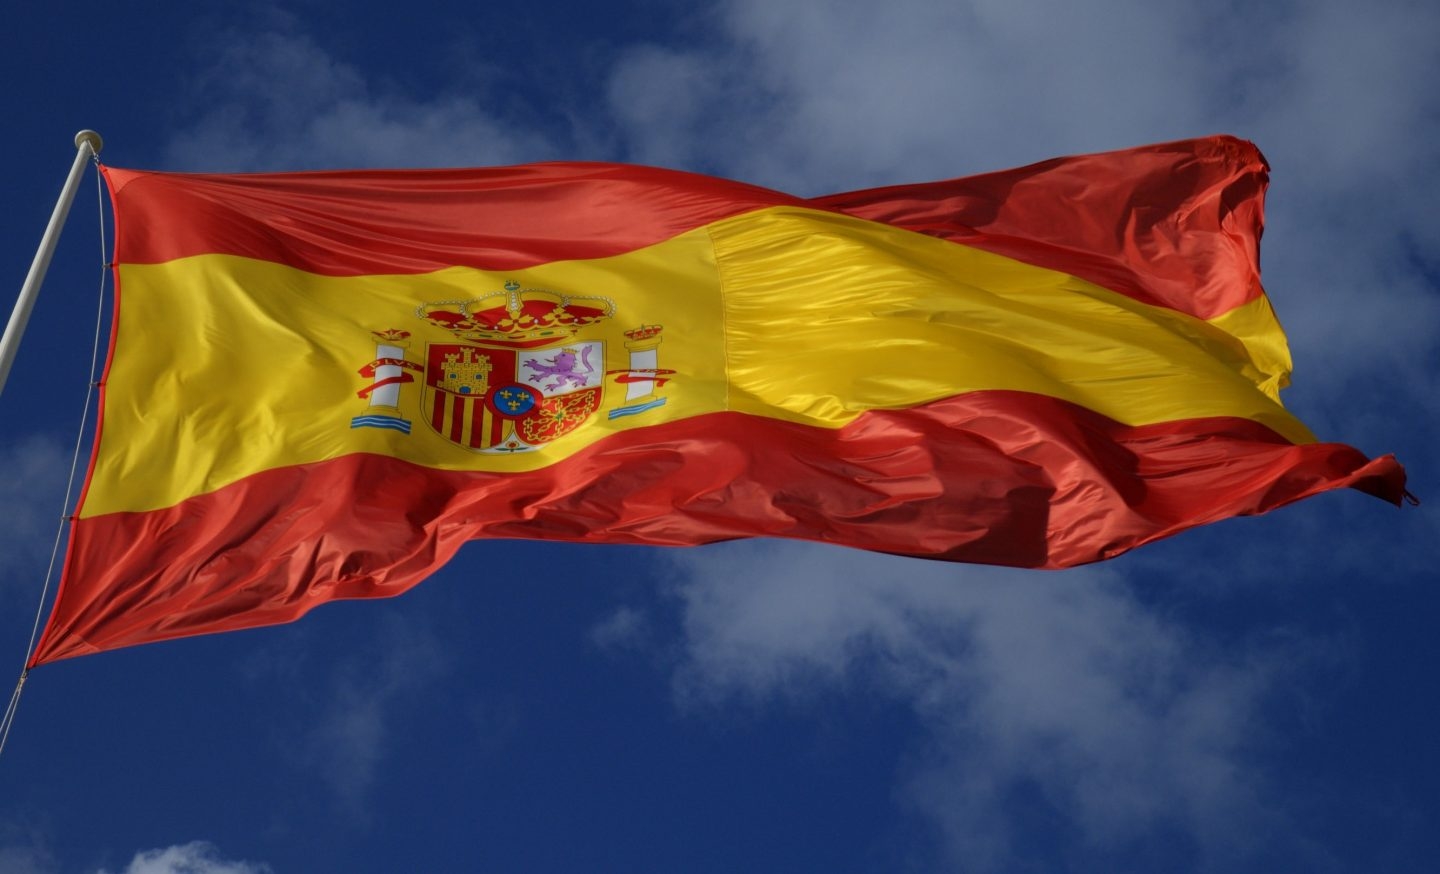 Una bandera española.